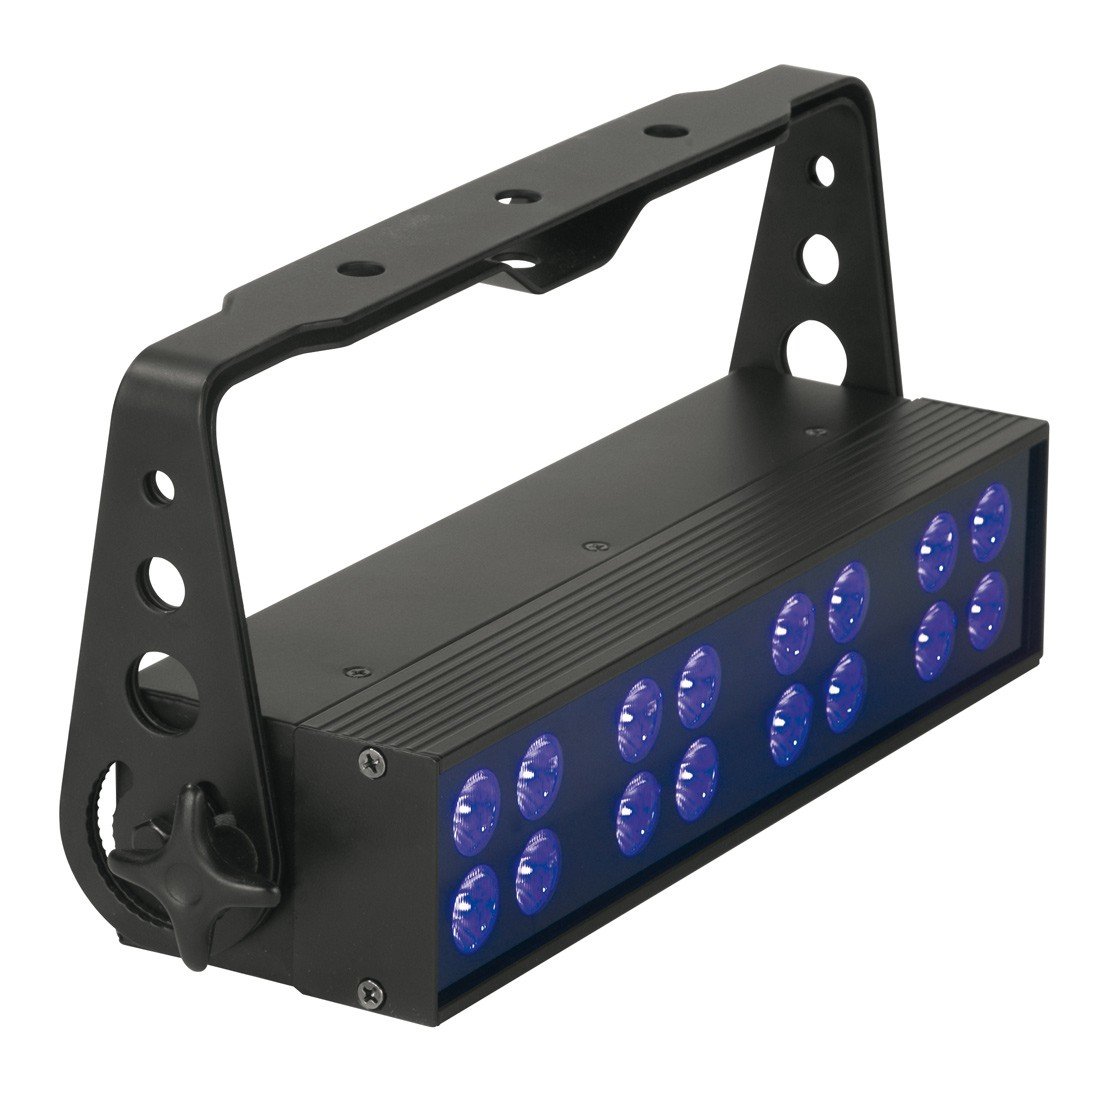 American Dj UVLED BAR16 мощная ультрафиолетовая световая панель с 16 яркими светодиодами мощностью 1W, срок службы светодиодов 50 000ч, 4 режима работы: Sound activе, DMX-512, Master/Slave, ручной. 1 режим DMX, UVстобо-эффект, диммер